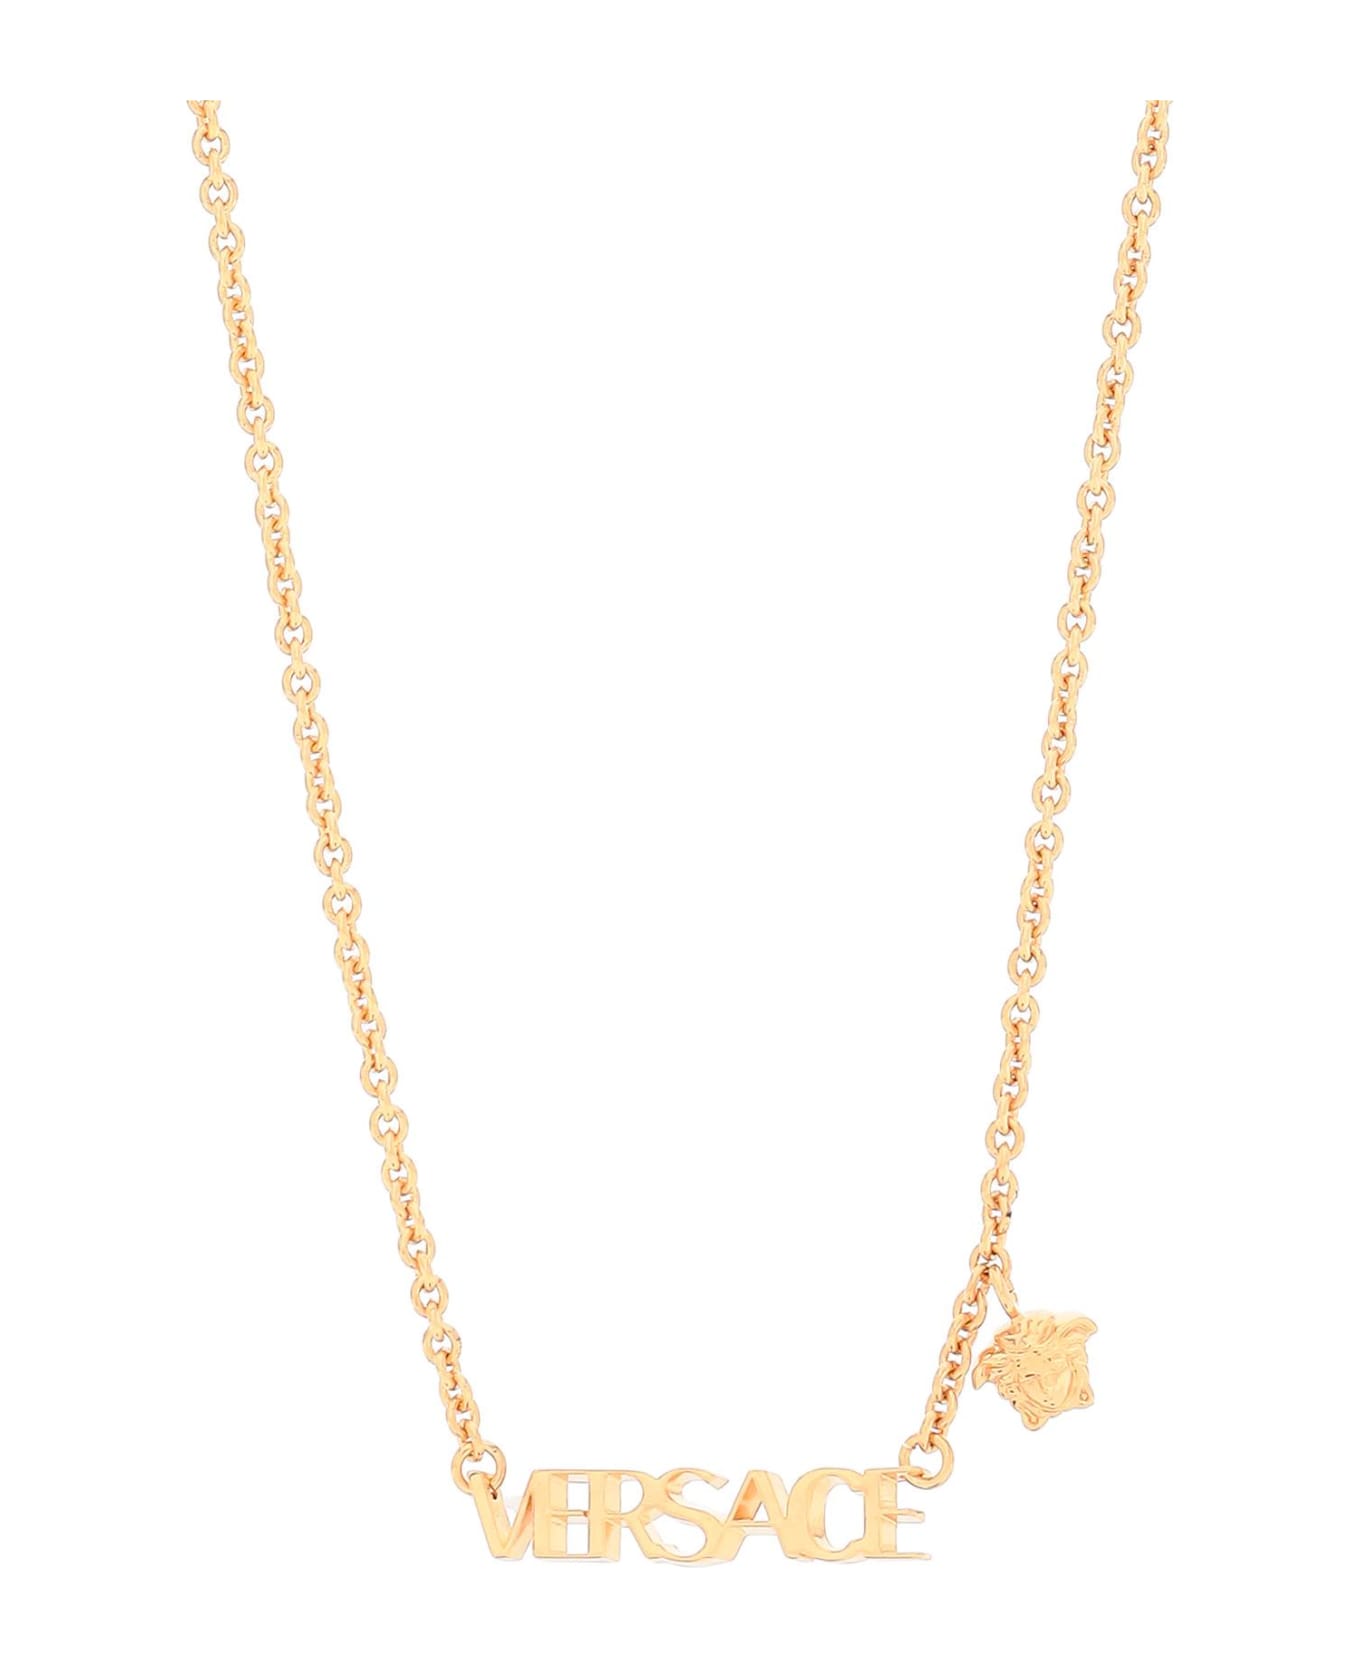 Versace Collana Logata In Metallo - Versace gold